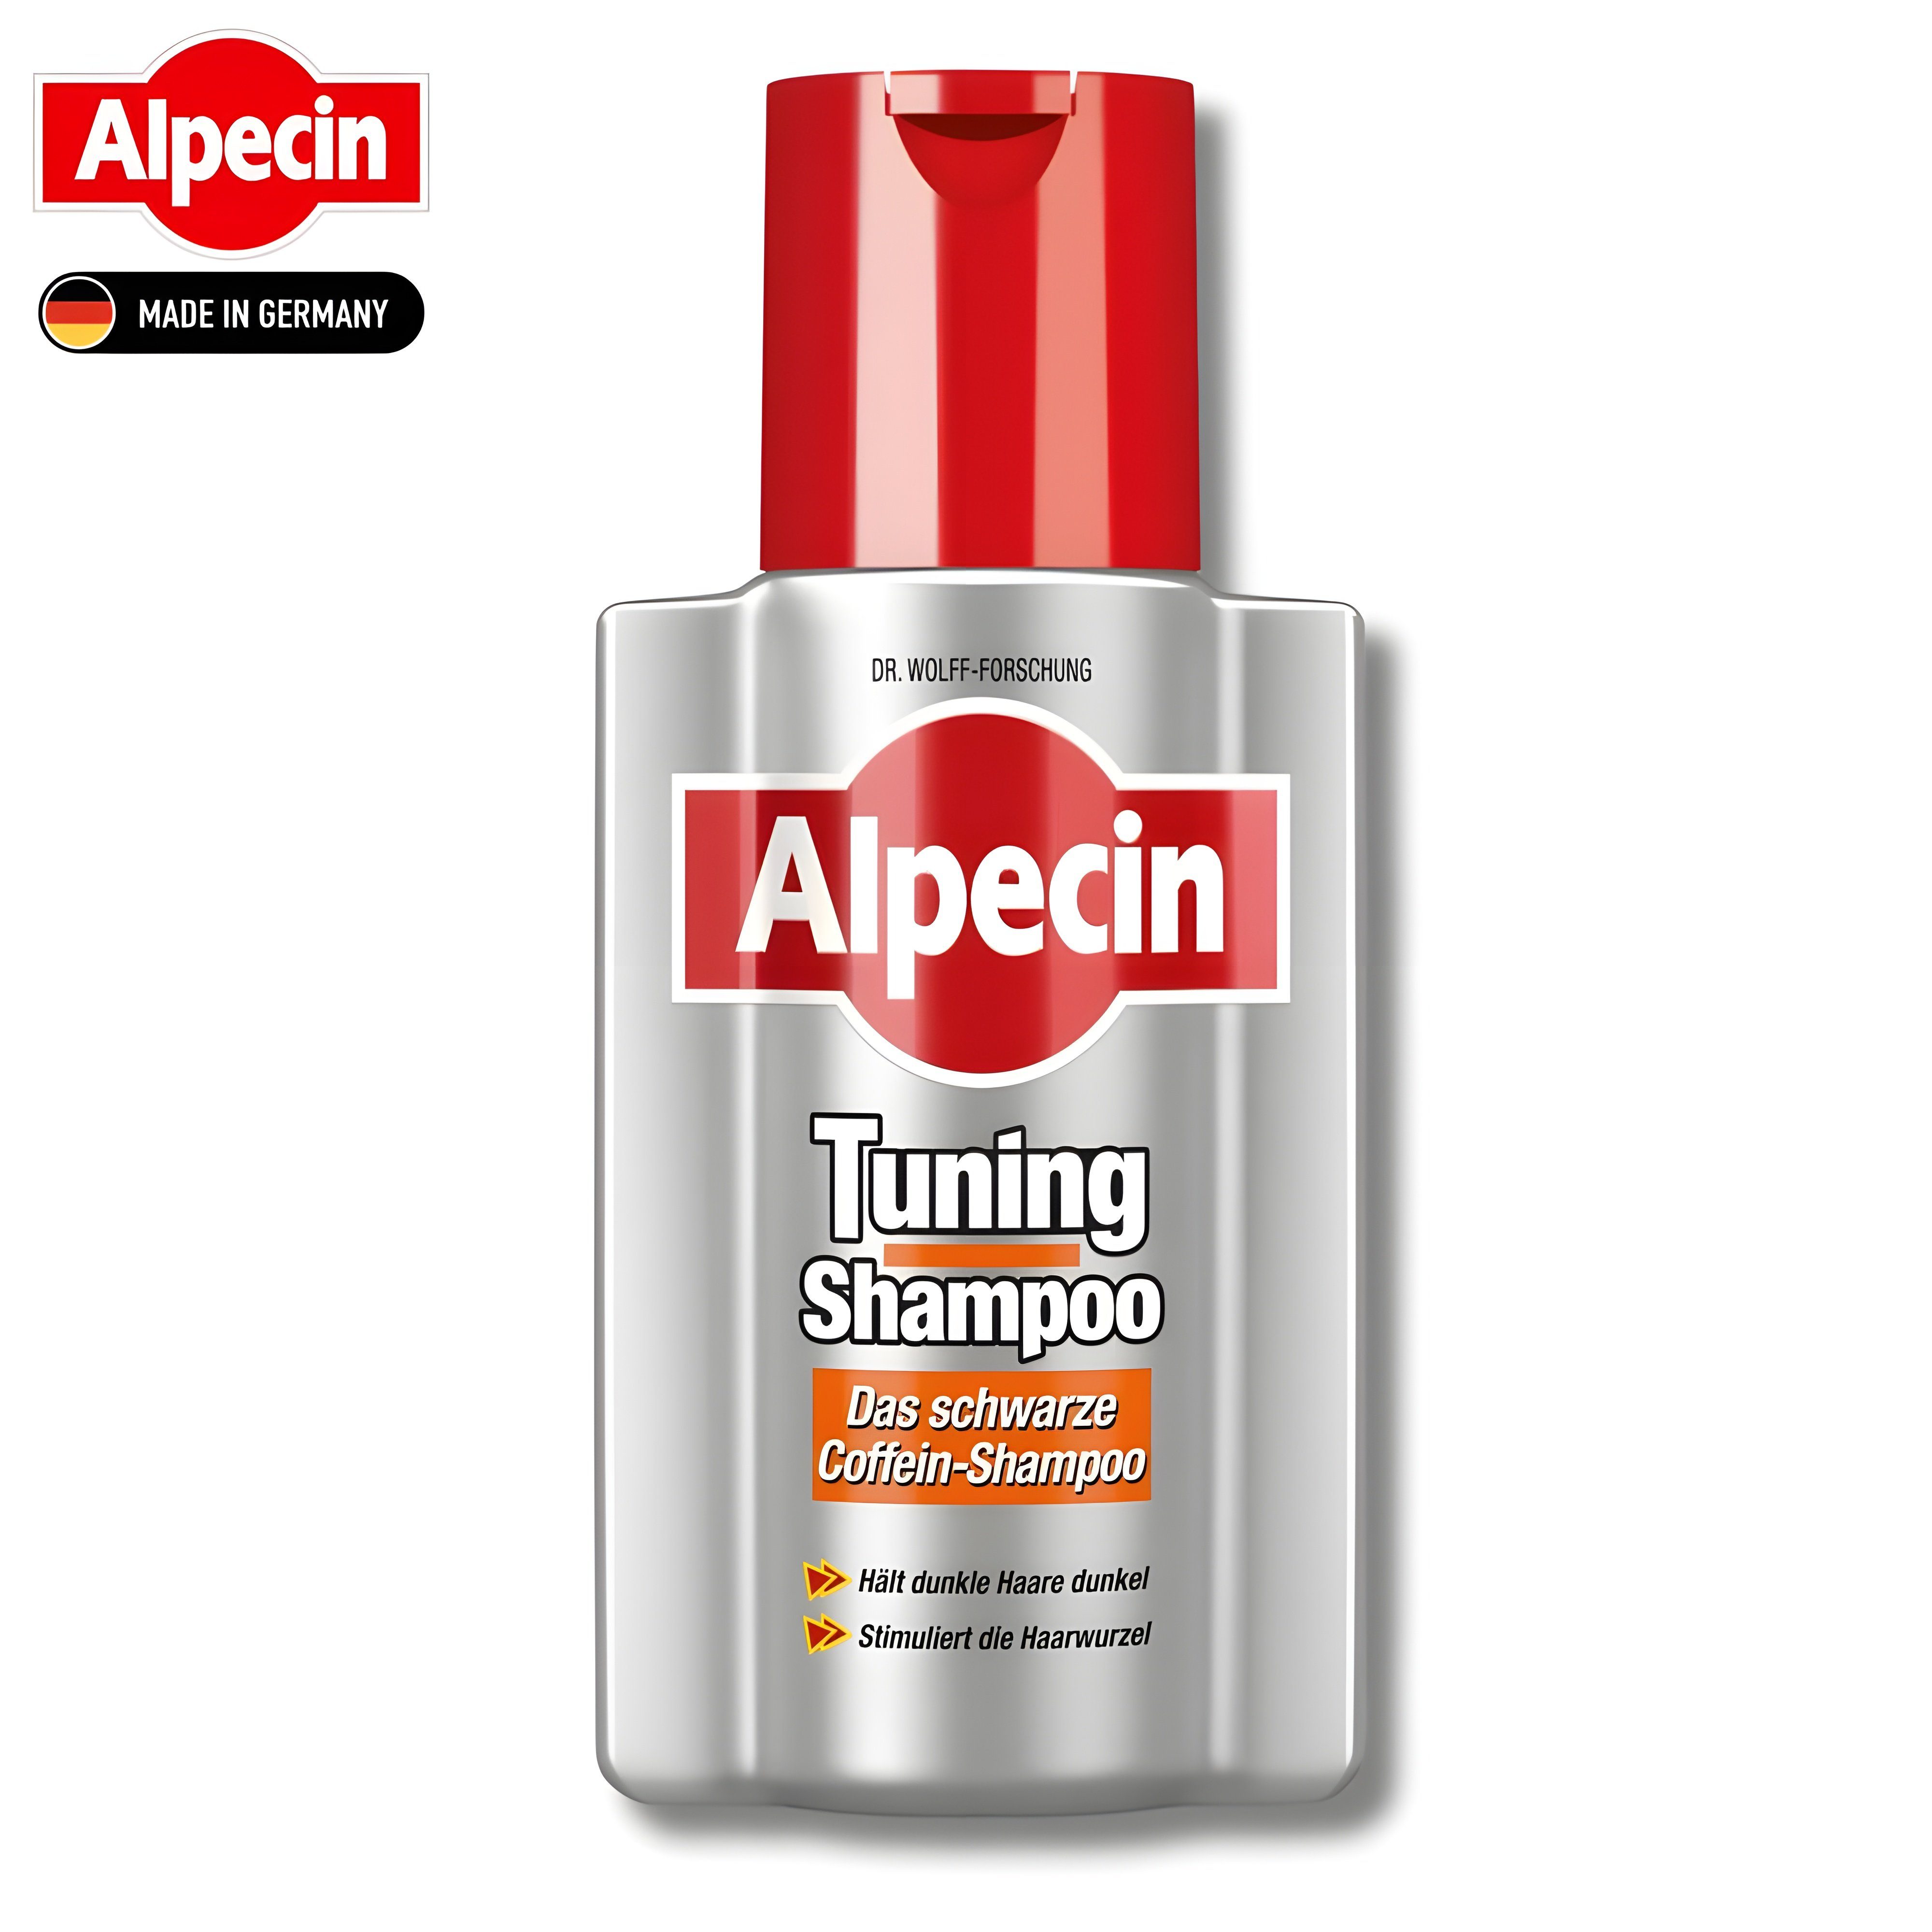 Alpecin Haarshampoo Das schwarze Coffein Tuning Shampoo, 200 ml, Hält dunkle Haare Dunkel & stimuliert die Haarwurzel